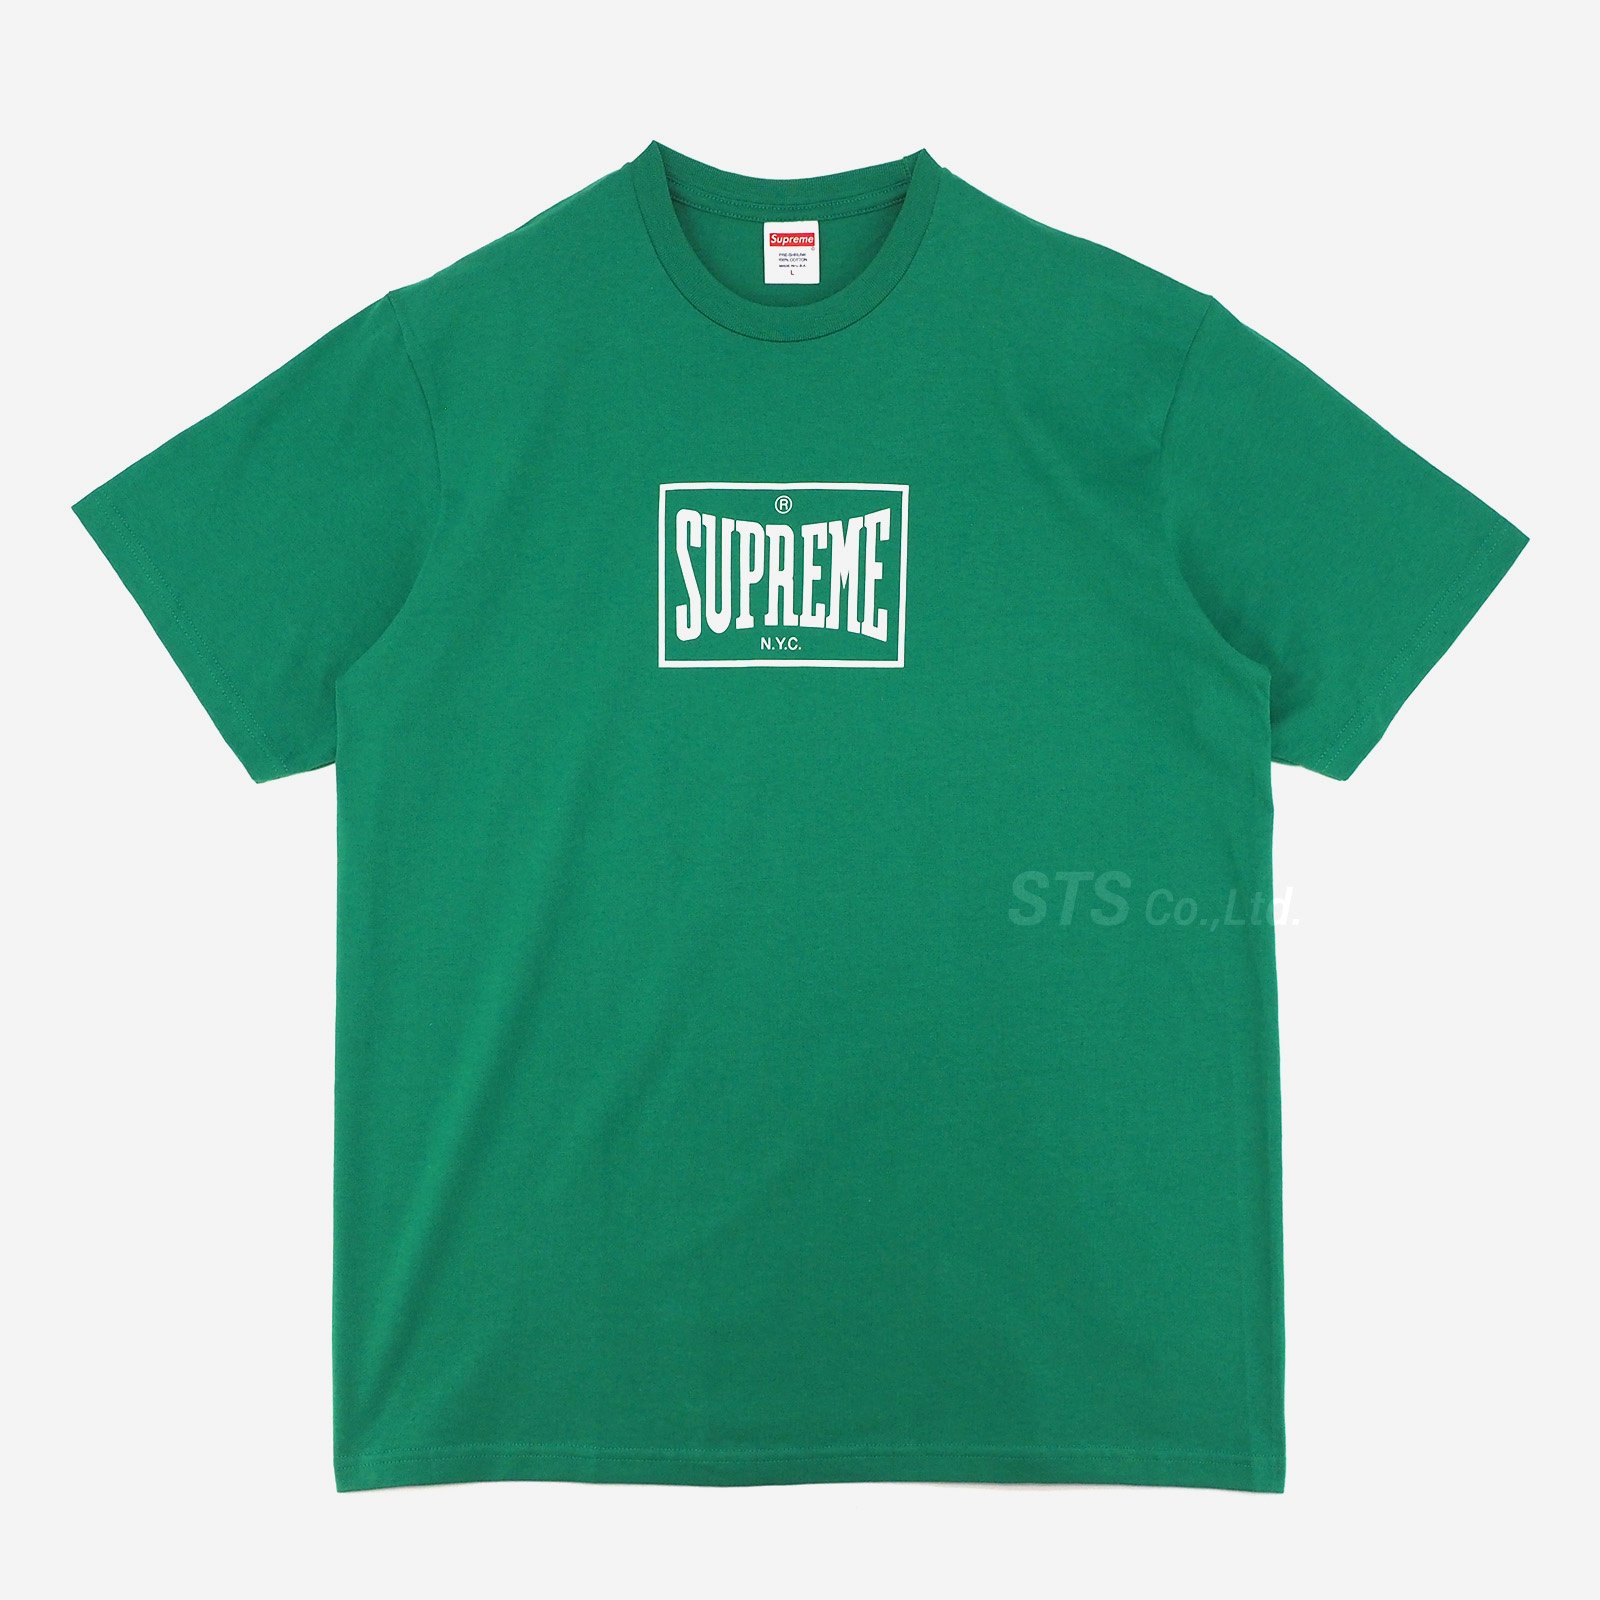 Supreme Upskirt Tee old シュプリーム Tシャツ 網タイツ - Tシャツ